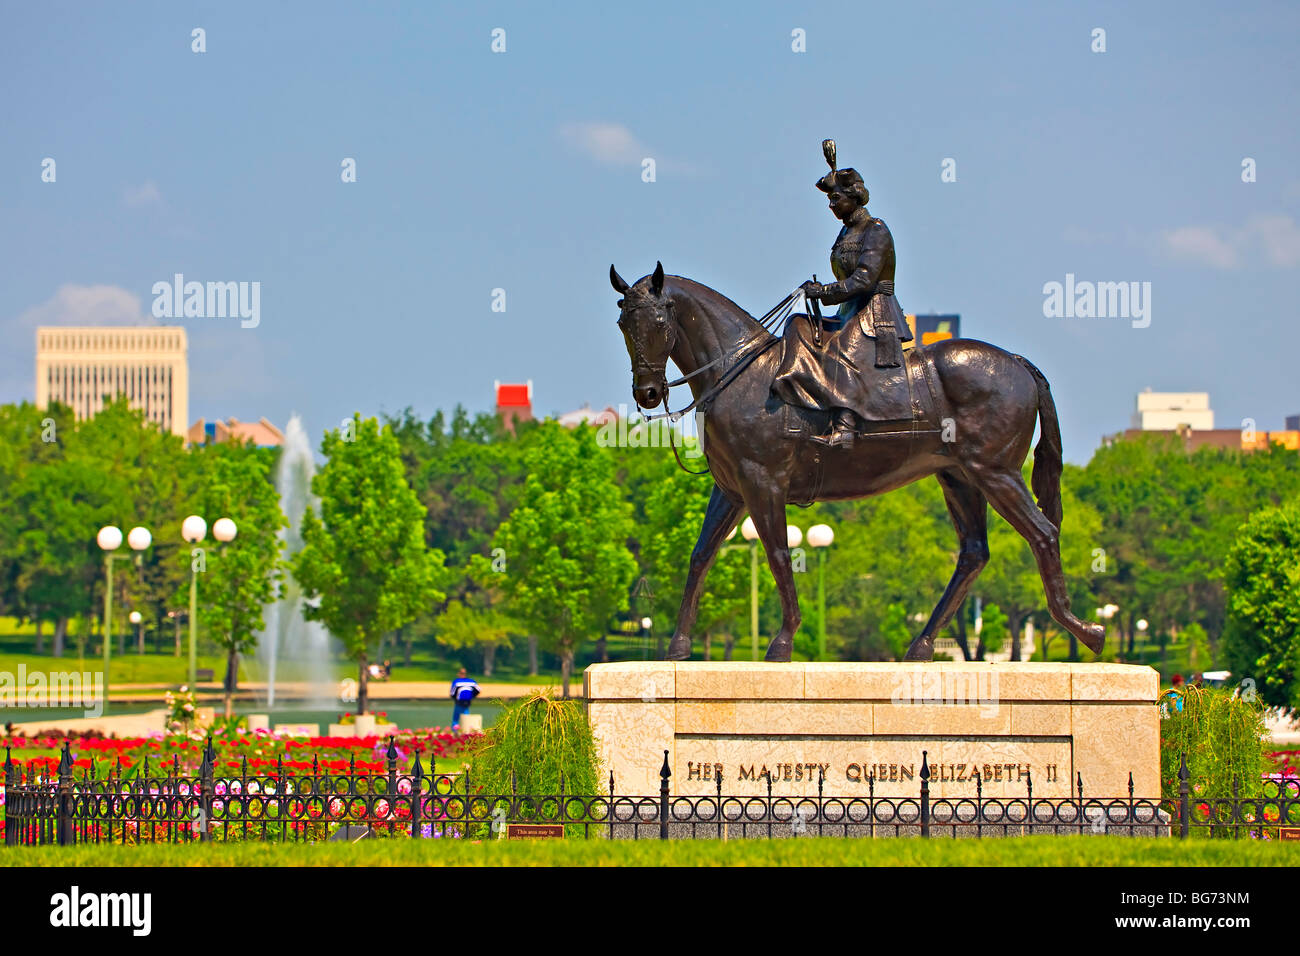 Equestrian statue of Queen Elizabeth II in the Queen Elizabeth II Gardens, City of Regina, Saskatchewan, Canada. Stock Photo